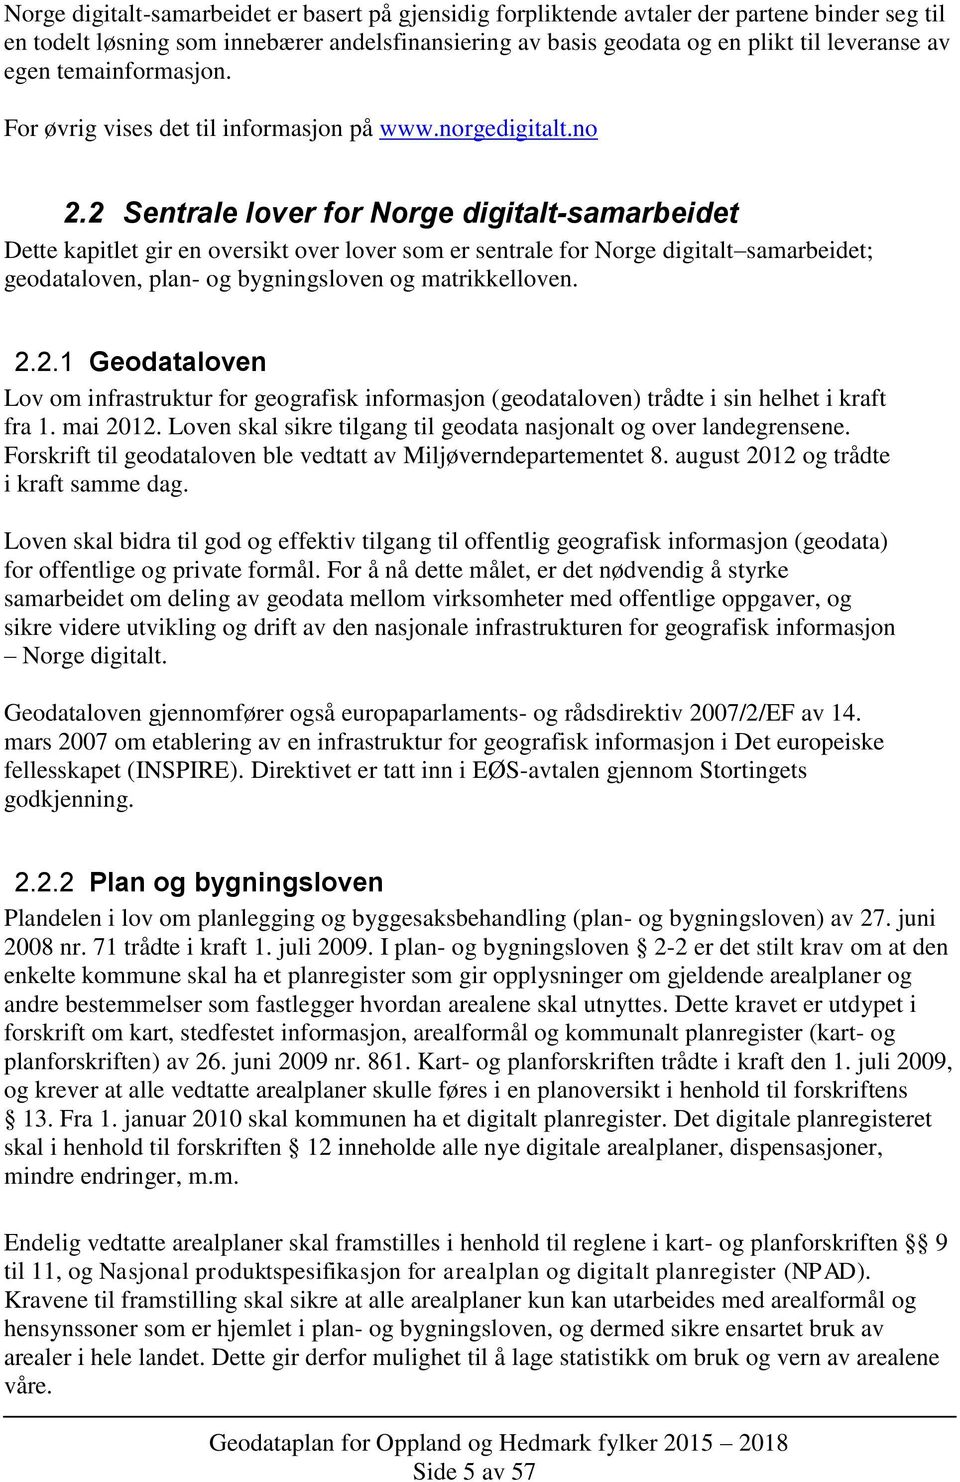 2 Sentrale lover for Norge digitalt-samarbeidet Dette kapitlet gir en oversikt over lover som er sentrale for Norge digitalt samarbeidet; geodataloven, plan- og bygningsloven og matrikkelloven. 2.2.1 Geodataloven Lov om infrastruktur for geografisk informasjon (geodataloven) trådte i sin helhet i kraft fra 1.